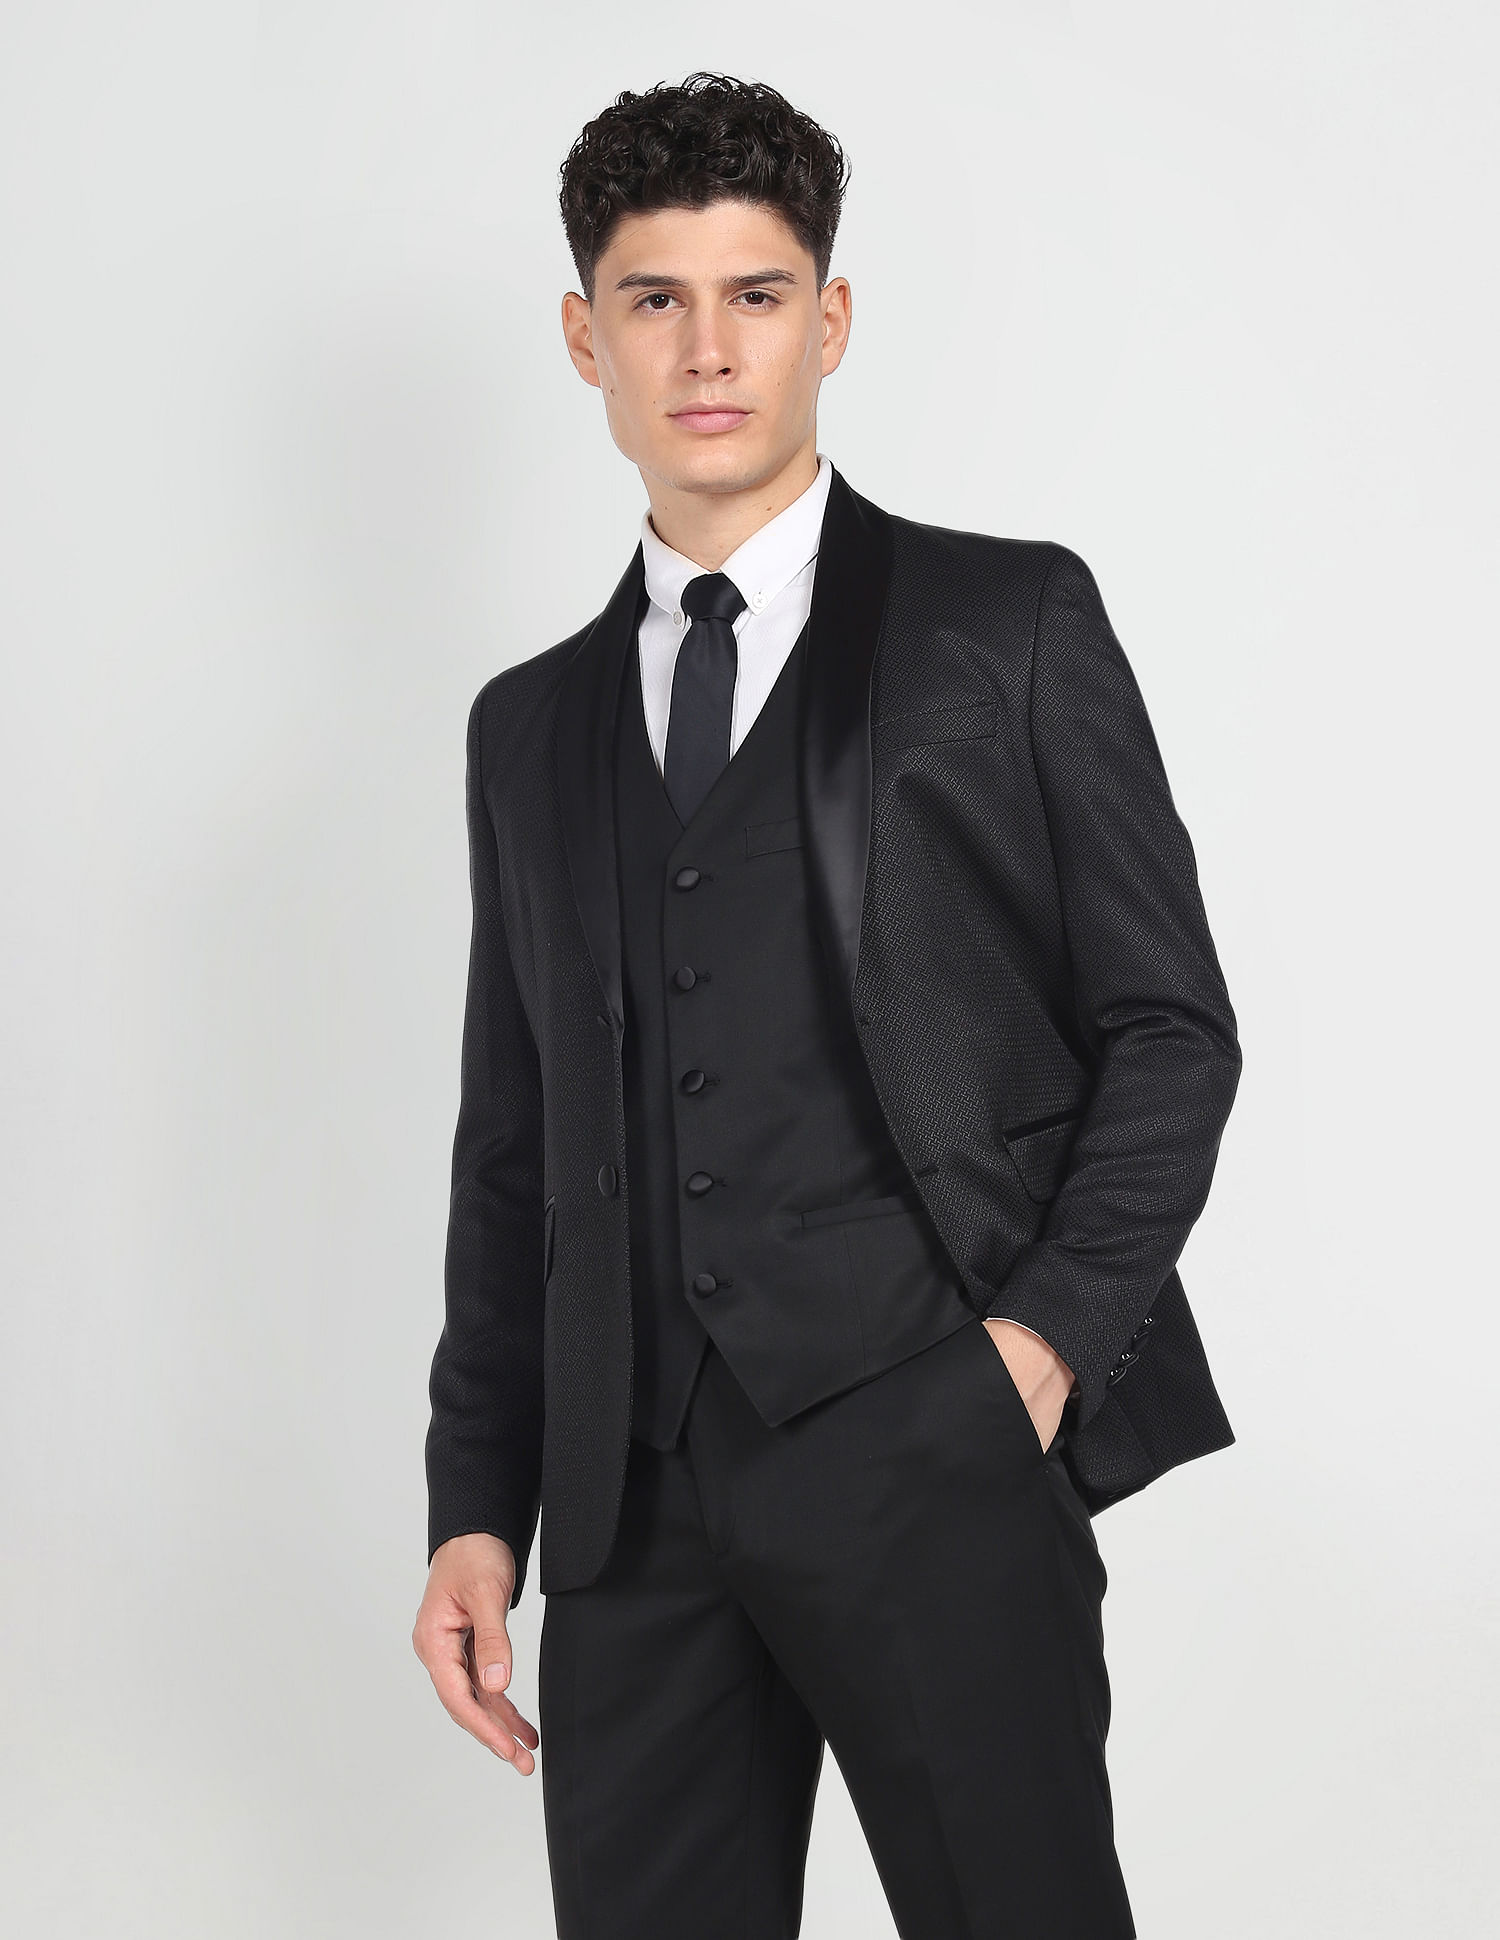 Men Suit 3 Piece Linen Suits for Men, Slim Fit Suits Dinner Suits, Wedding  Groom Suits, Bespoke for Men - Etsy